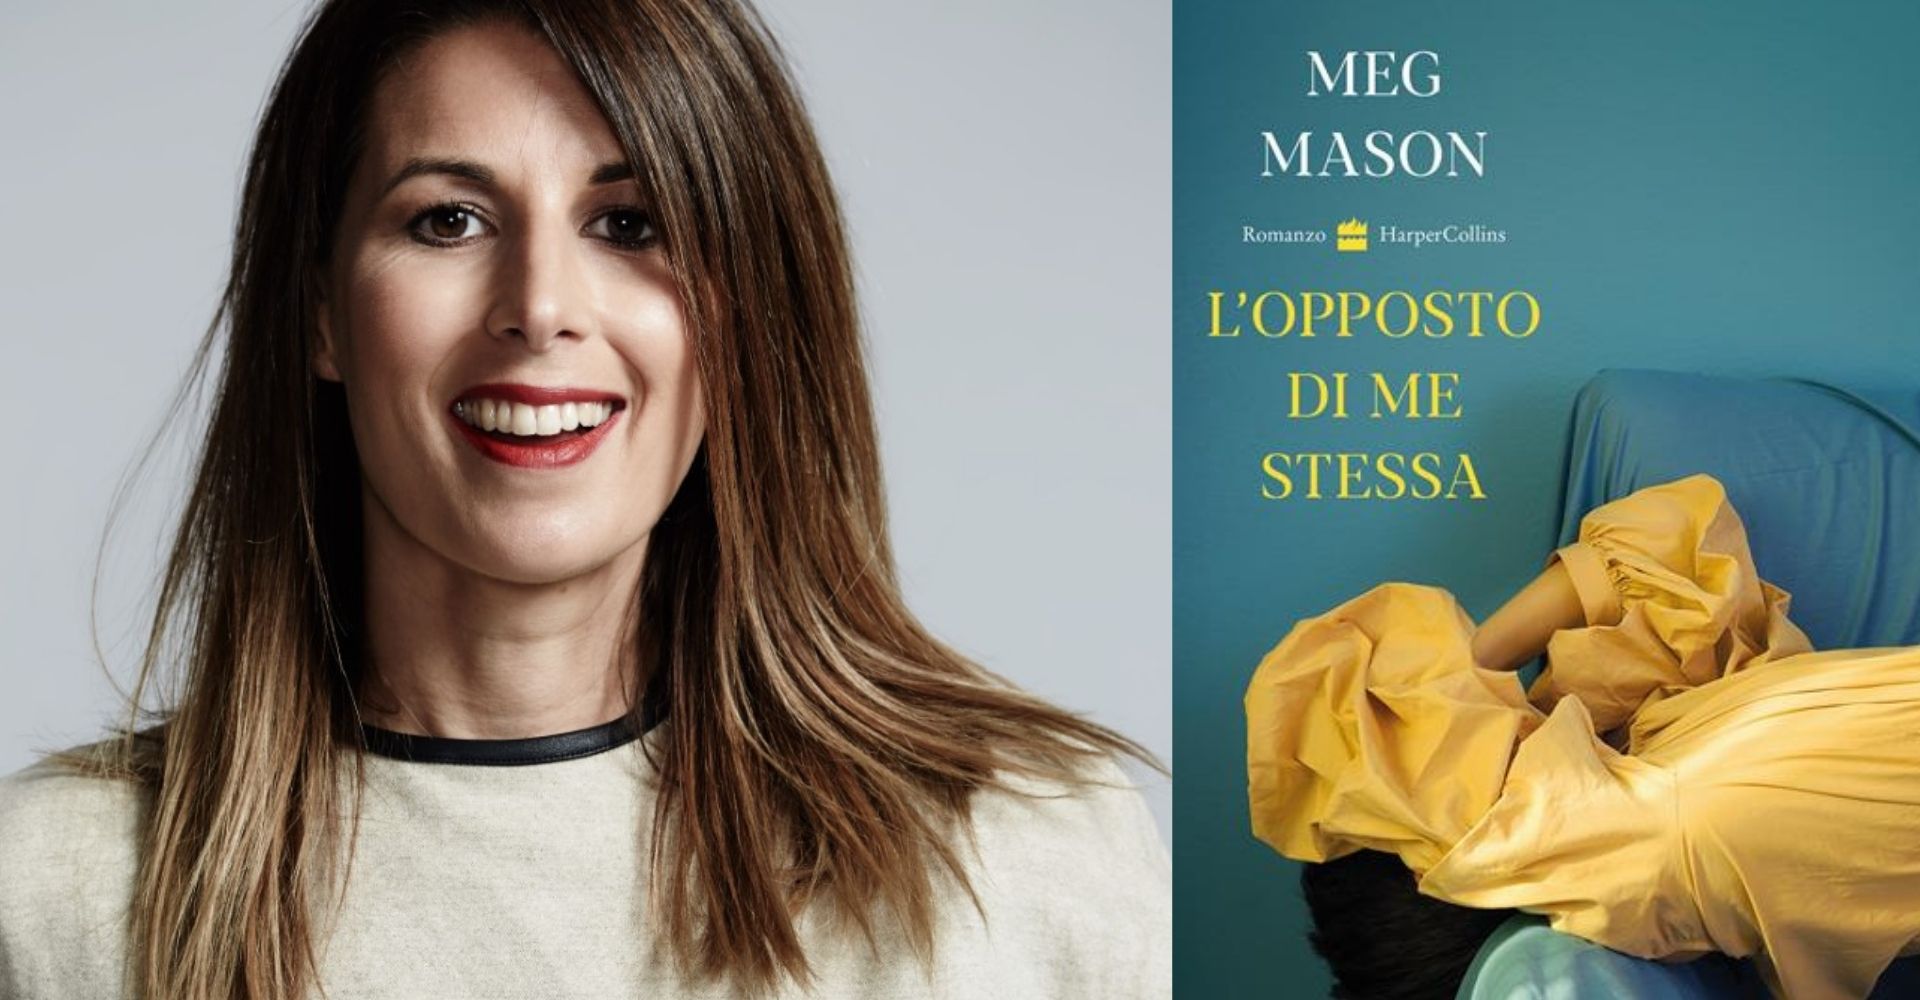 "L’opposto di me stessa": il romanzo di Meg Mason, sull’importanza della salute mentale